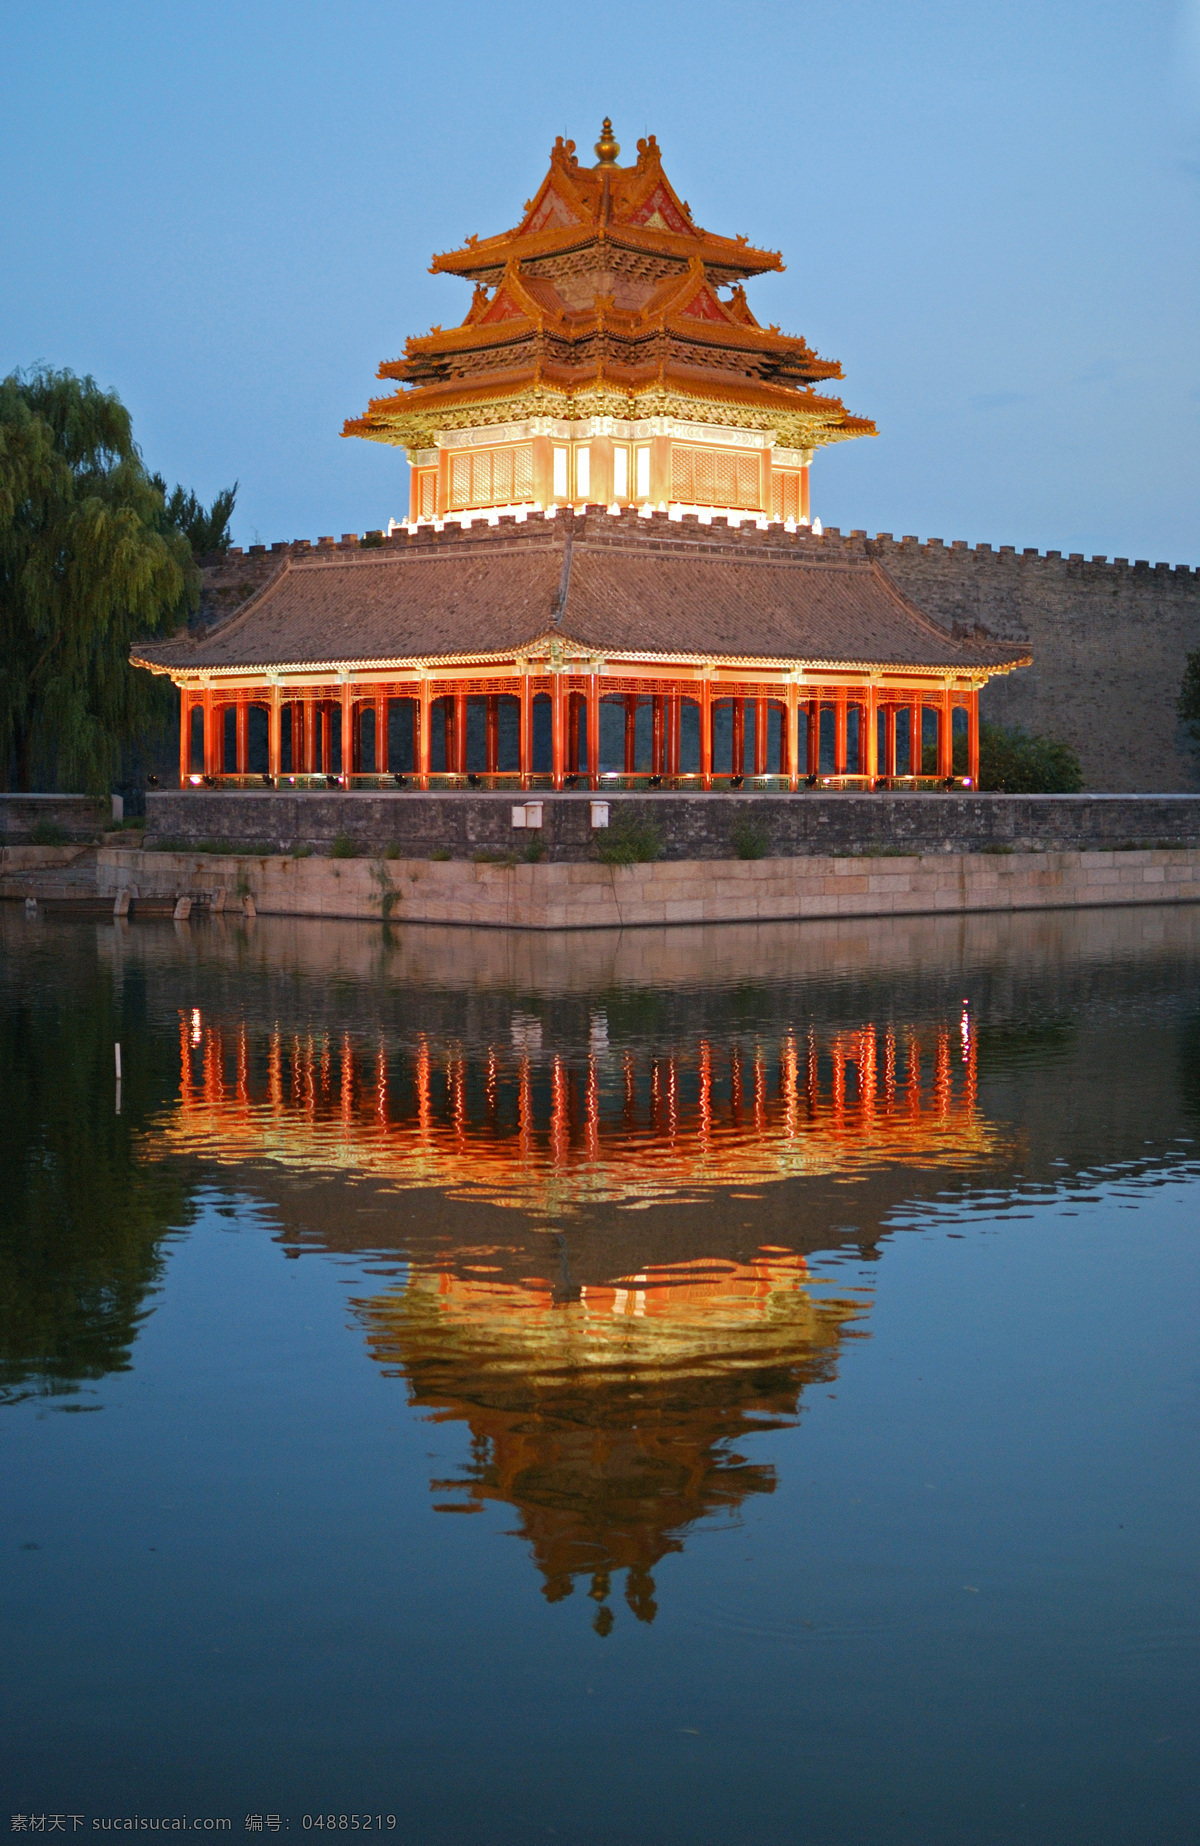 故宫角楼 旅游 中国 北京 建筑 历史文化 古迹 故宫 角楼 夜景 园林建筑 建筑园林